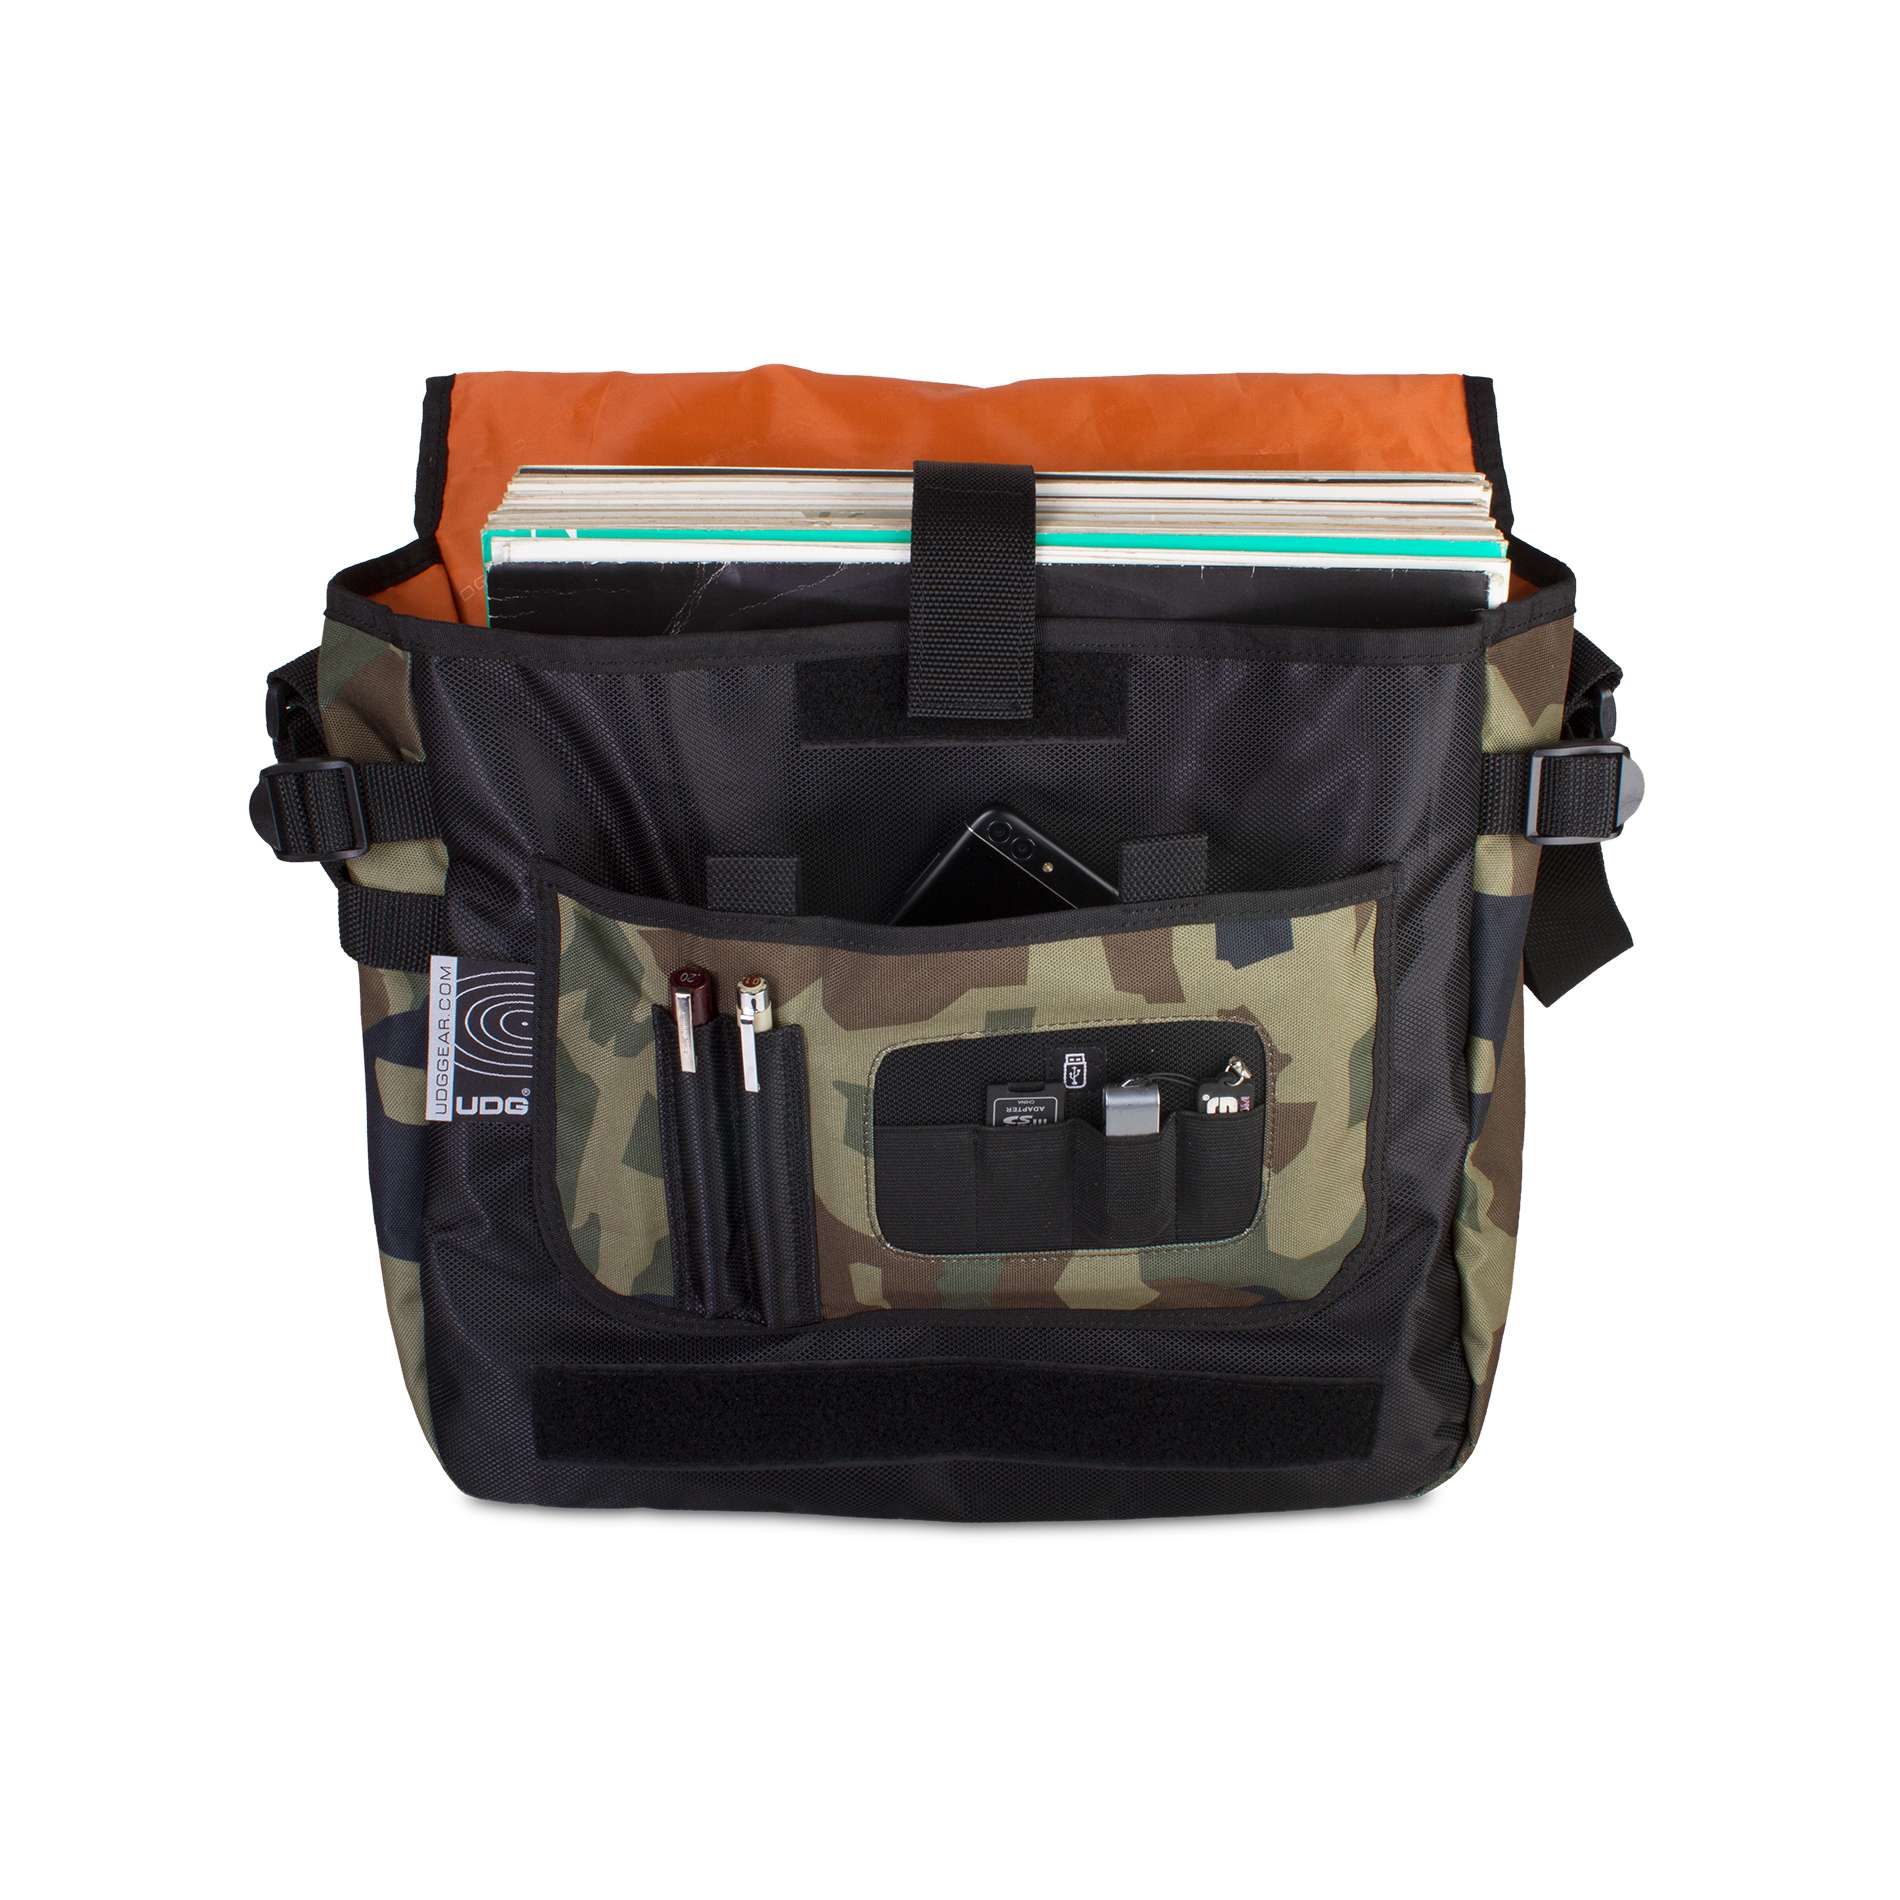 Udg U 9450 Bc-or(courierbag Black Camo Orange) - Housse Dj - Variation 2